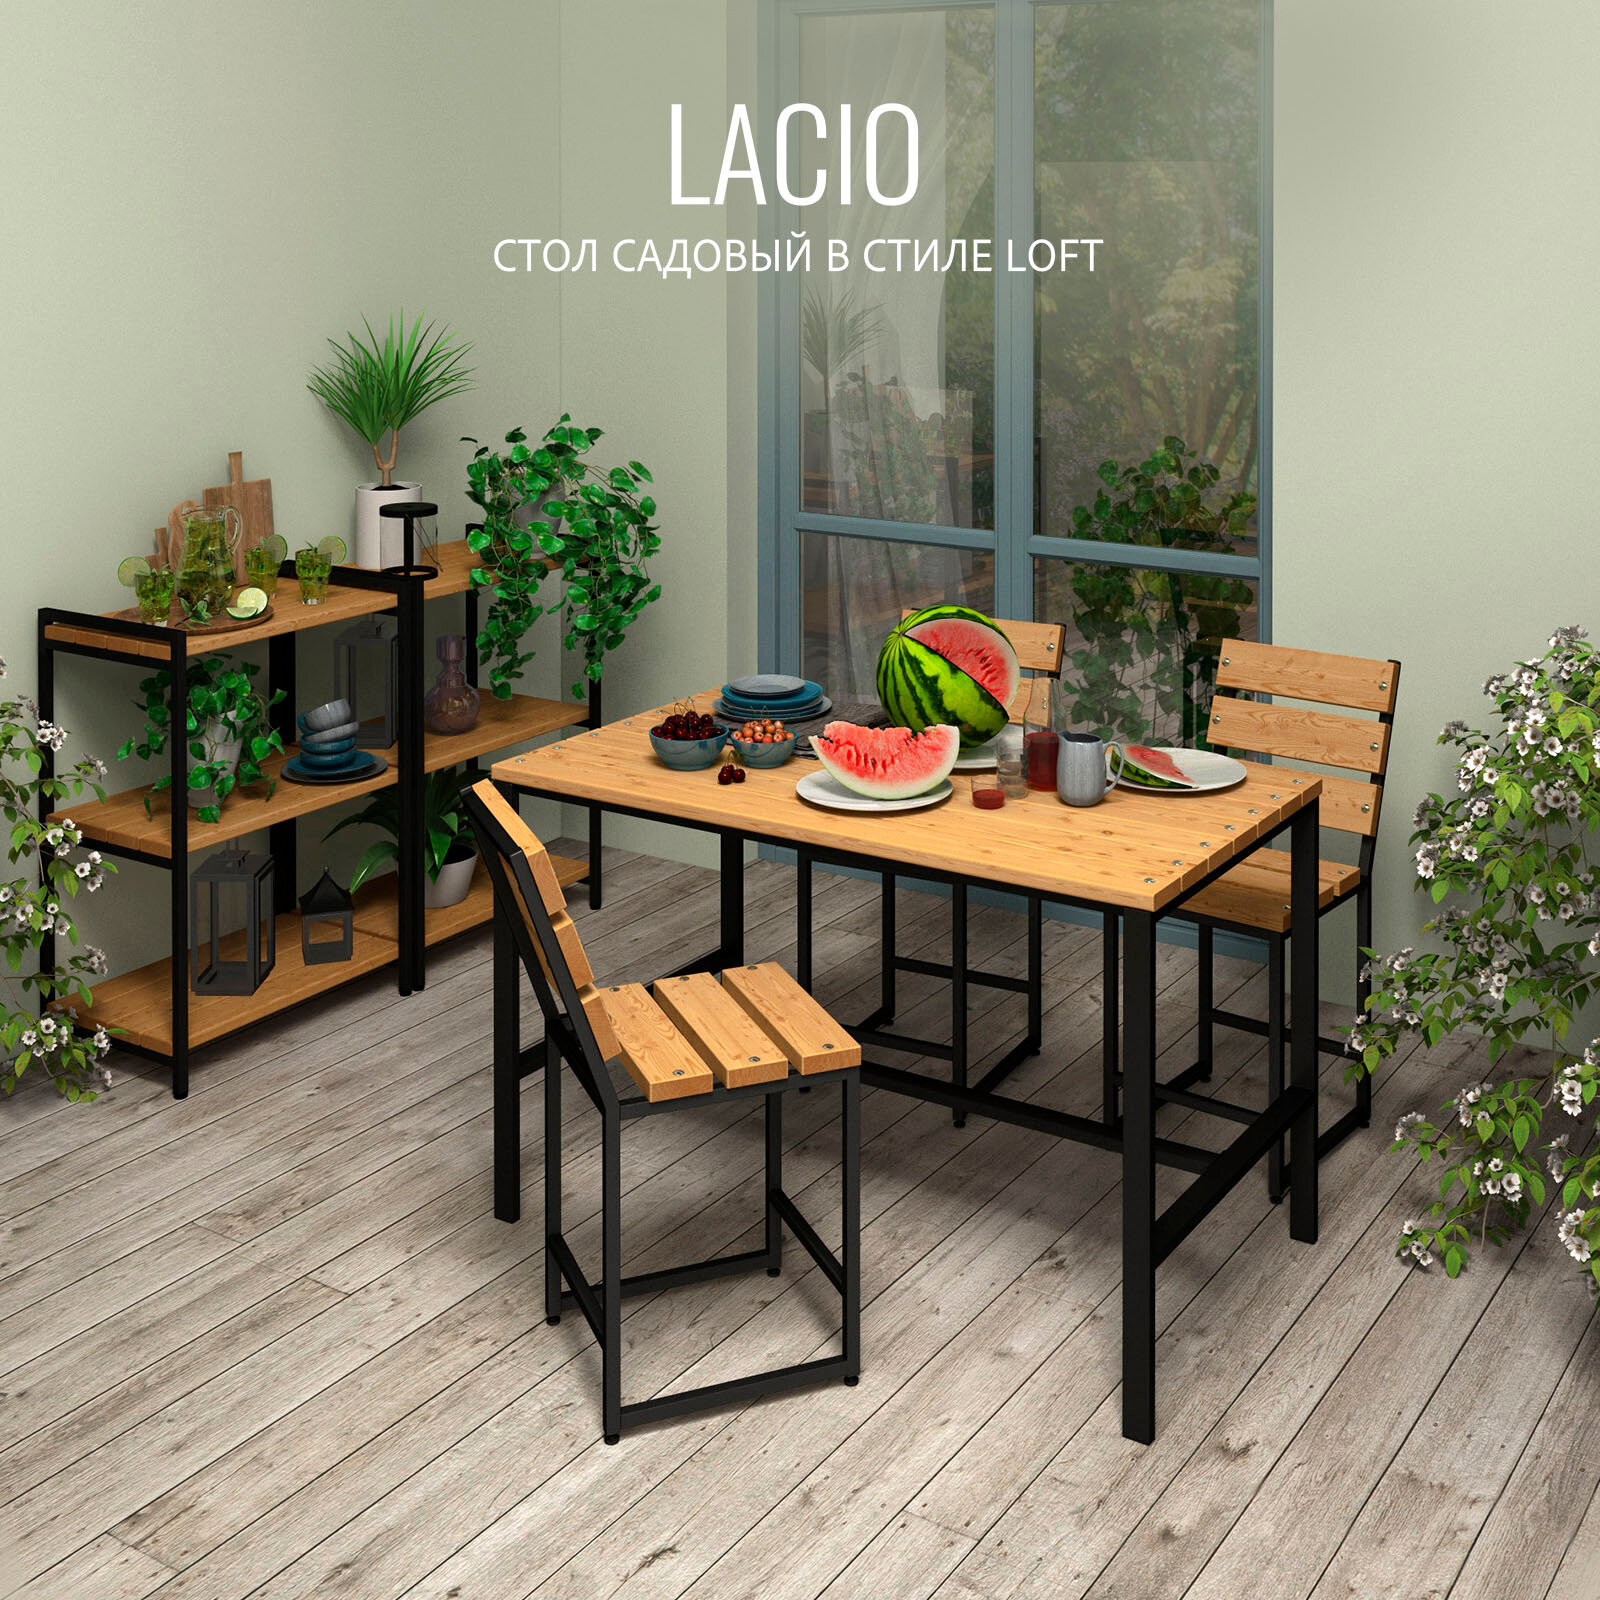 Стол садовый LACIO loft стол деревянный для дачи стол уличный металлический 120х60х75 см 1шт гростат